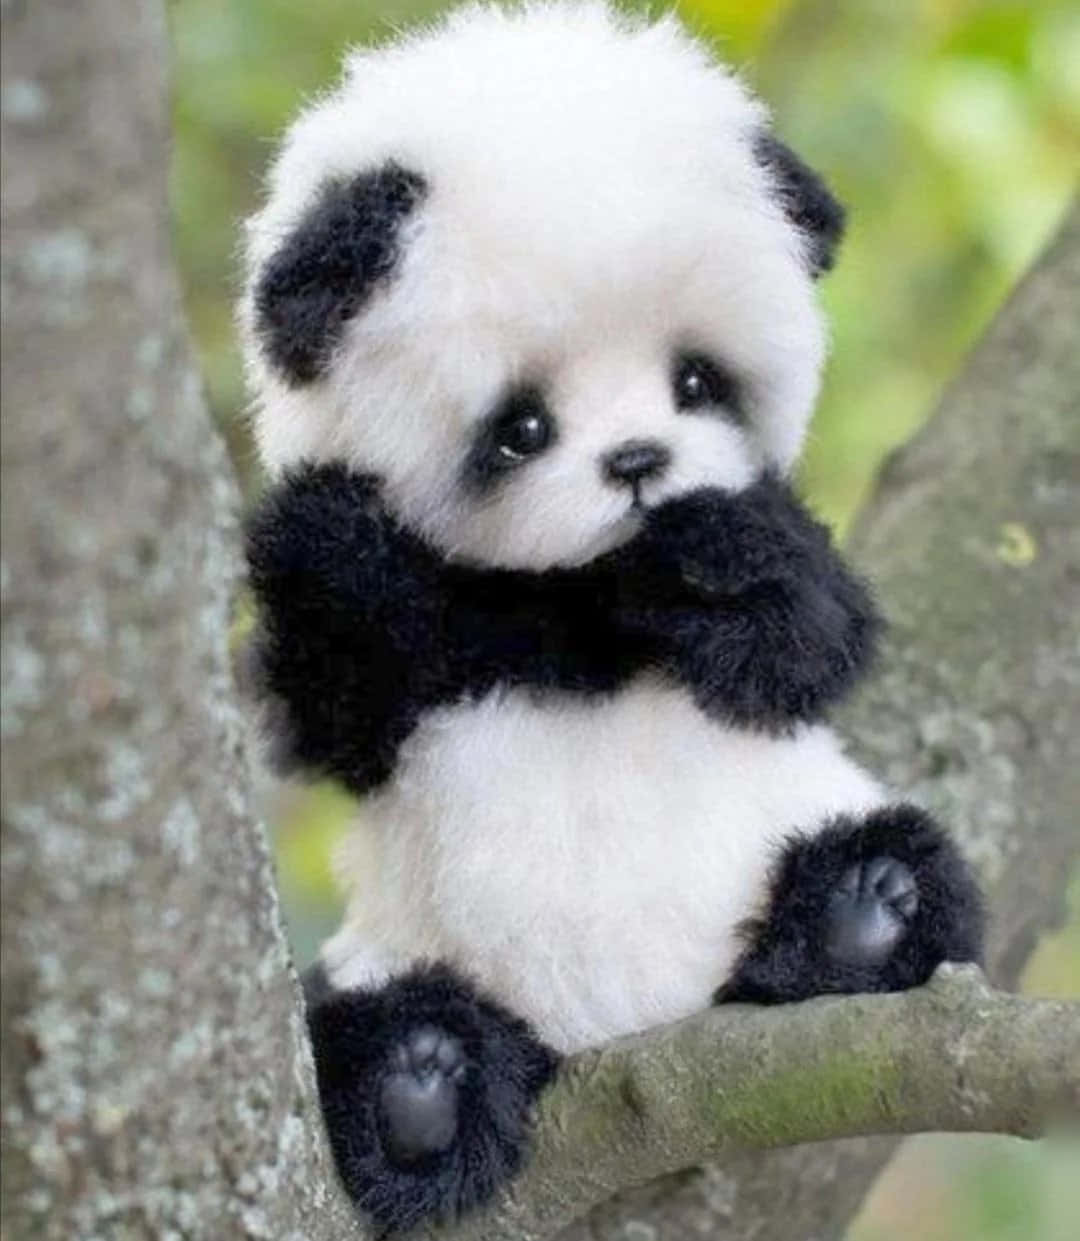 "Aww, it's a cute panda!"